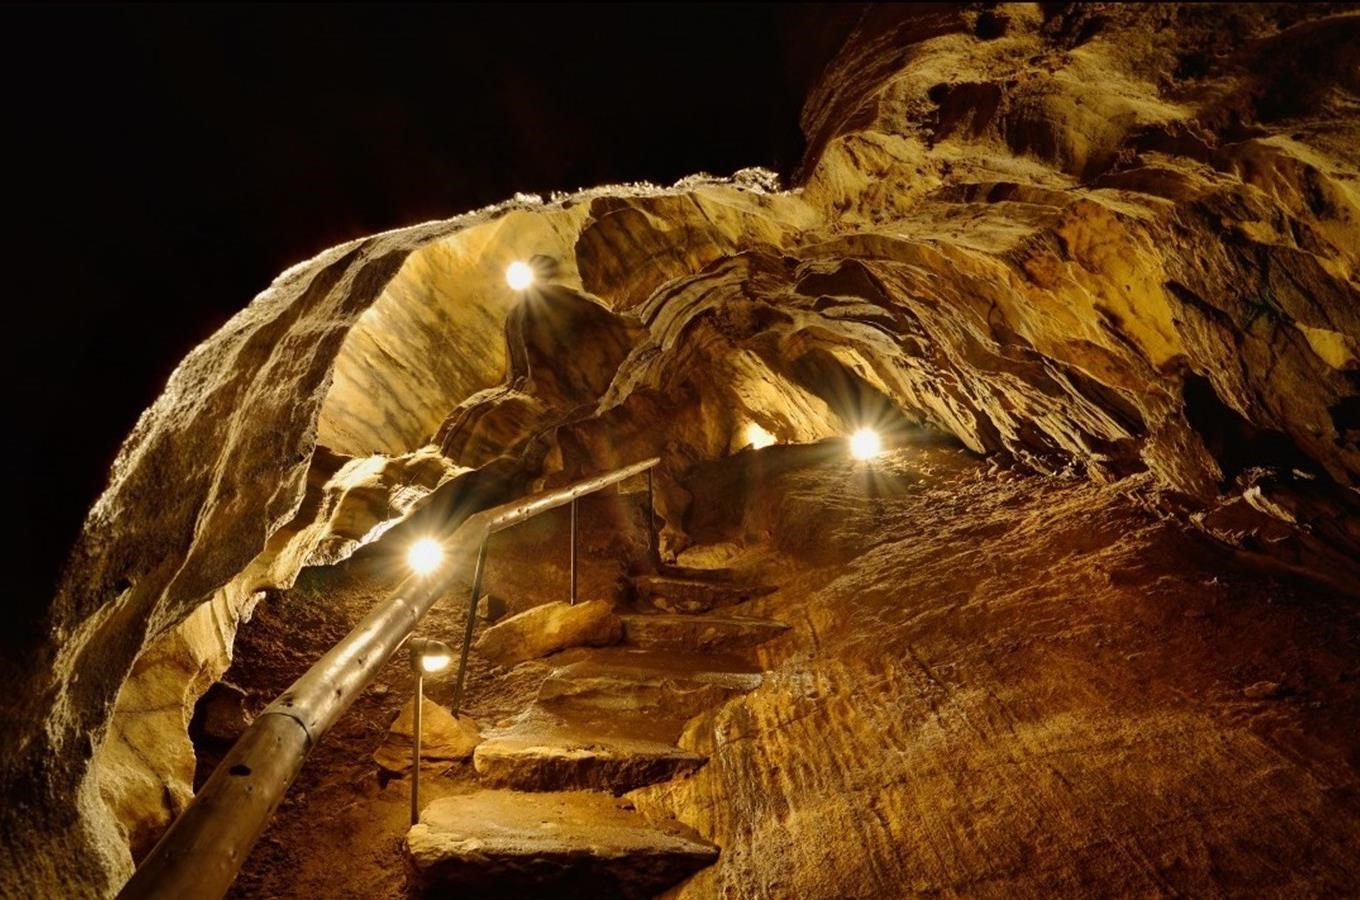 Chýnovská jeskyně - nejstarší zpřístupněná jeskyně v České republice